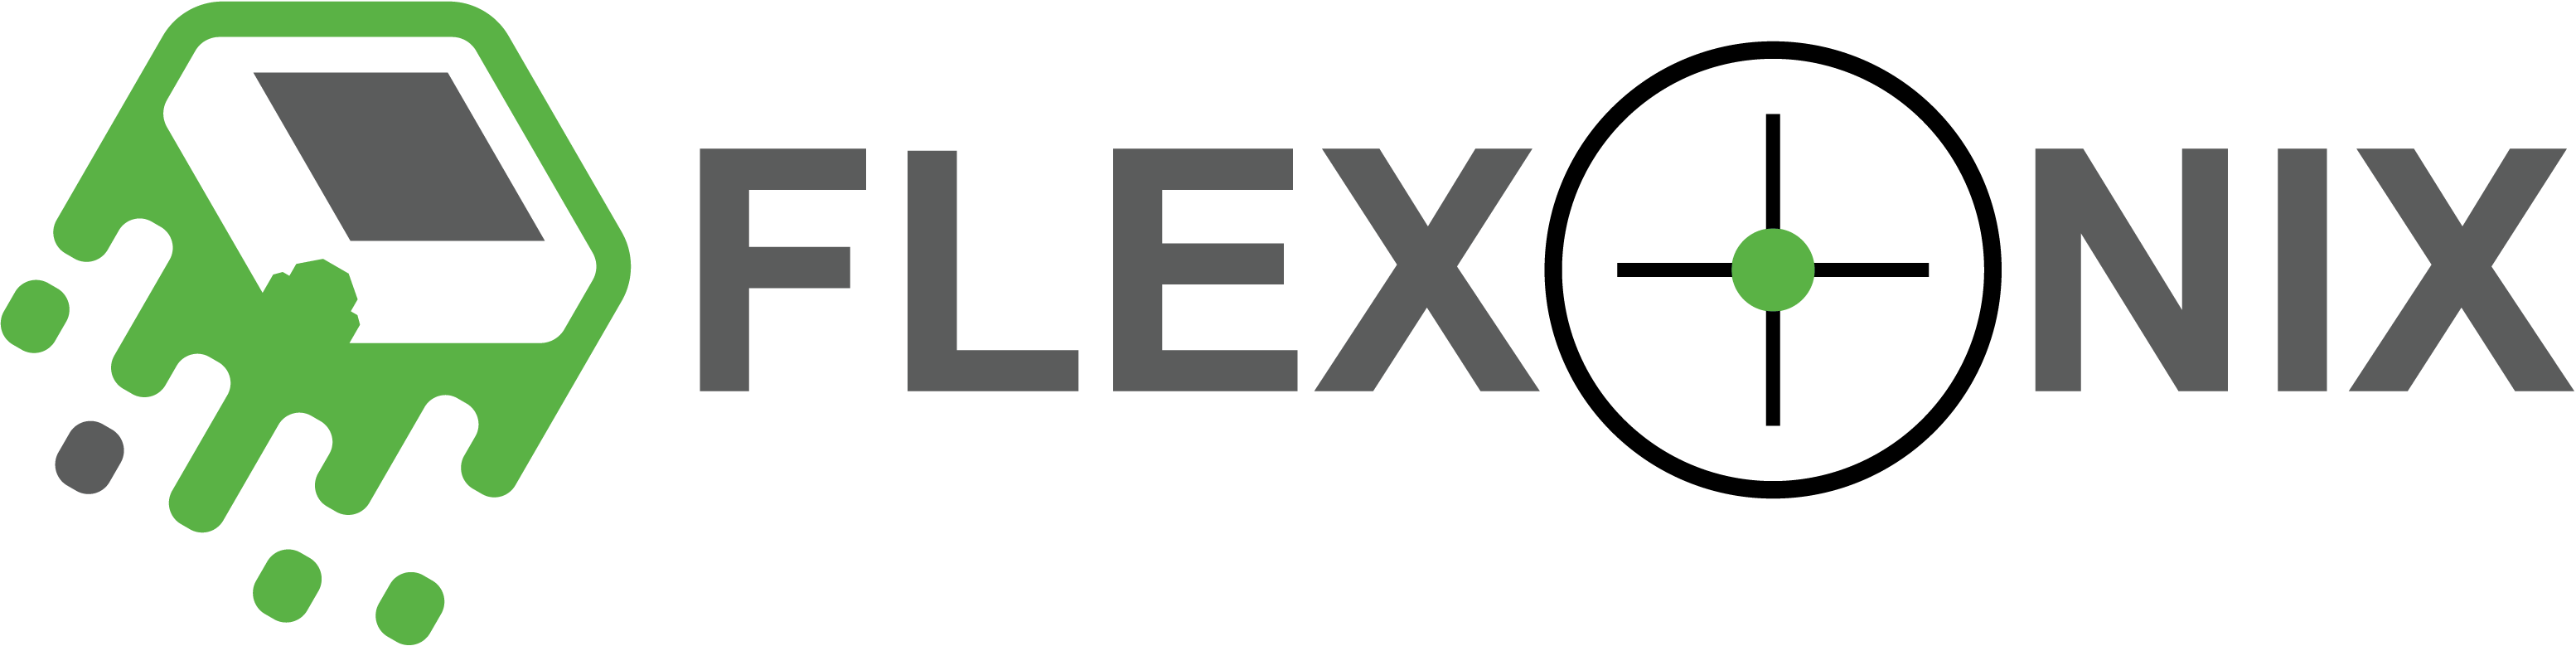 FLEXONIX – Flexonix